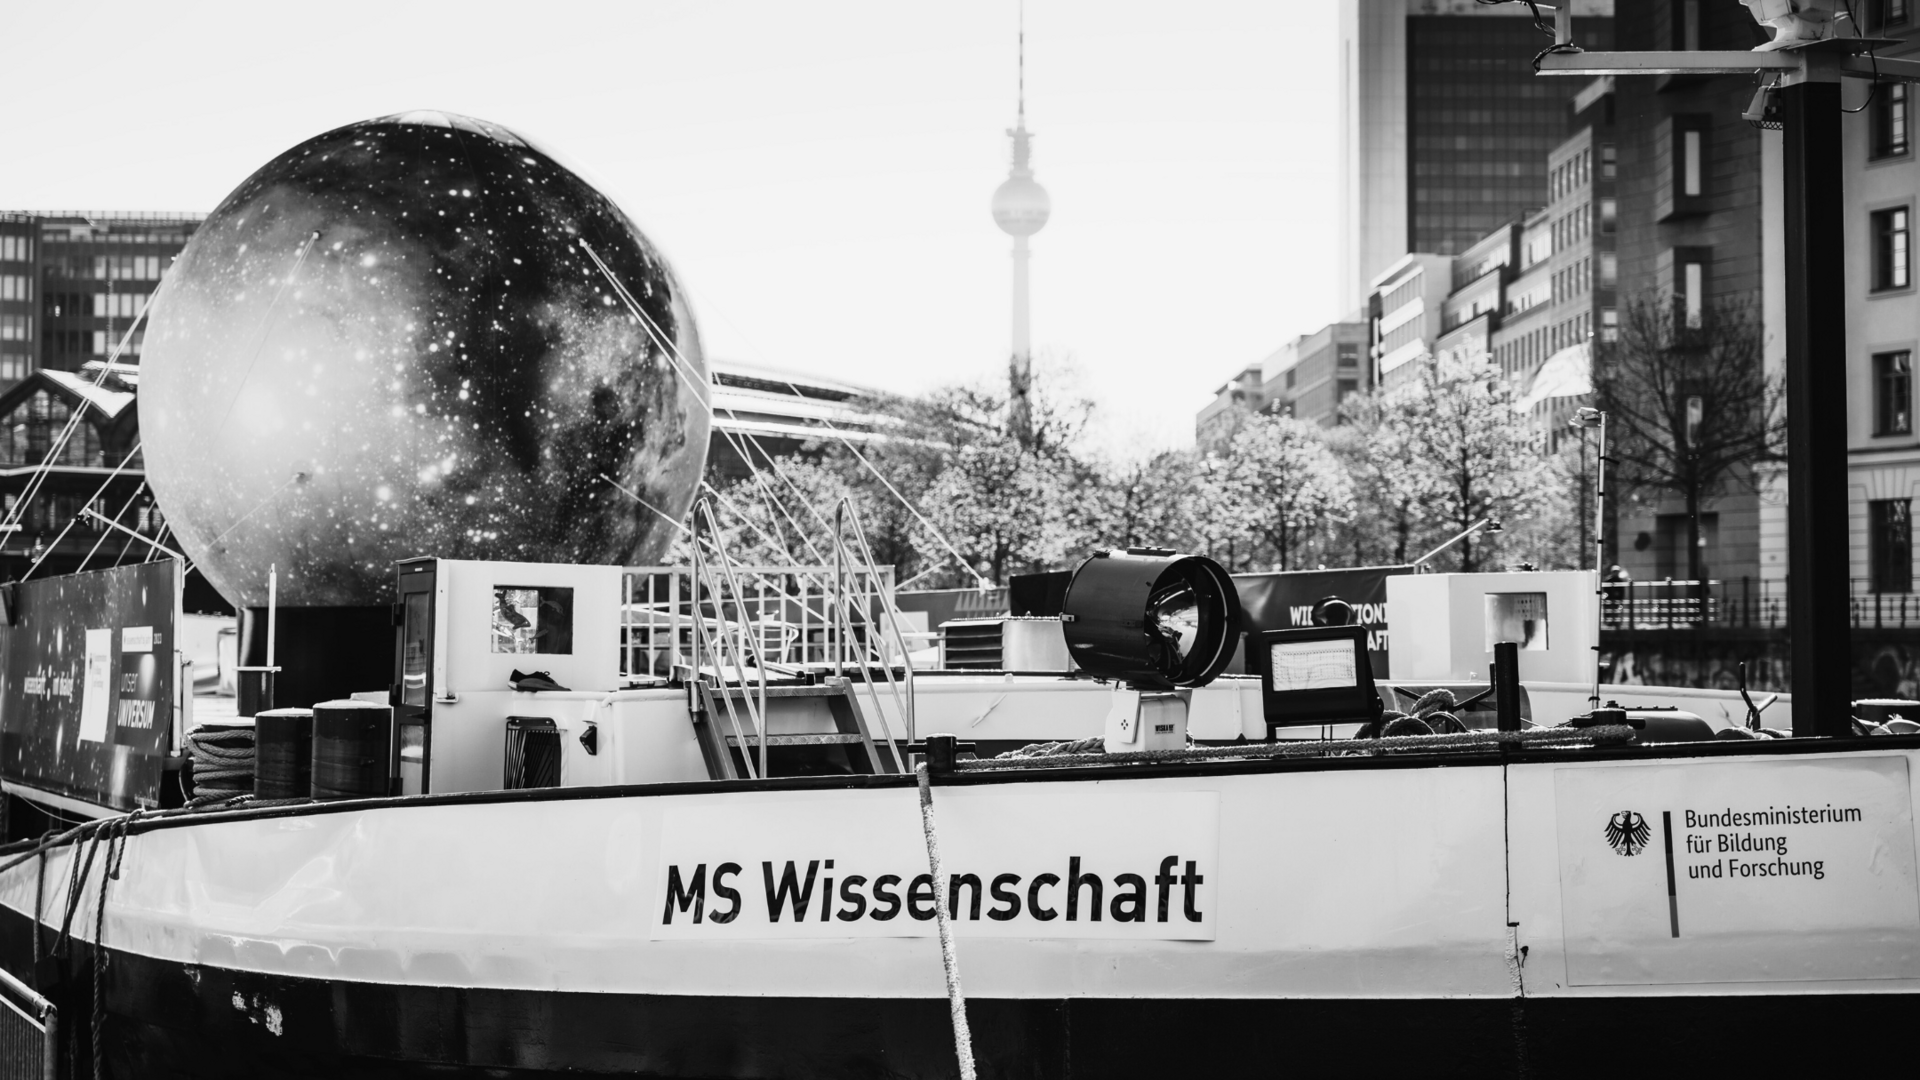 Projektbild MS Wissenschaft: Foto eines Frachtschiffes, an der Reling steht "MS Wissenschaft" An Deck ist eine große Attrappe des Mondes mit Seilen befestigt.